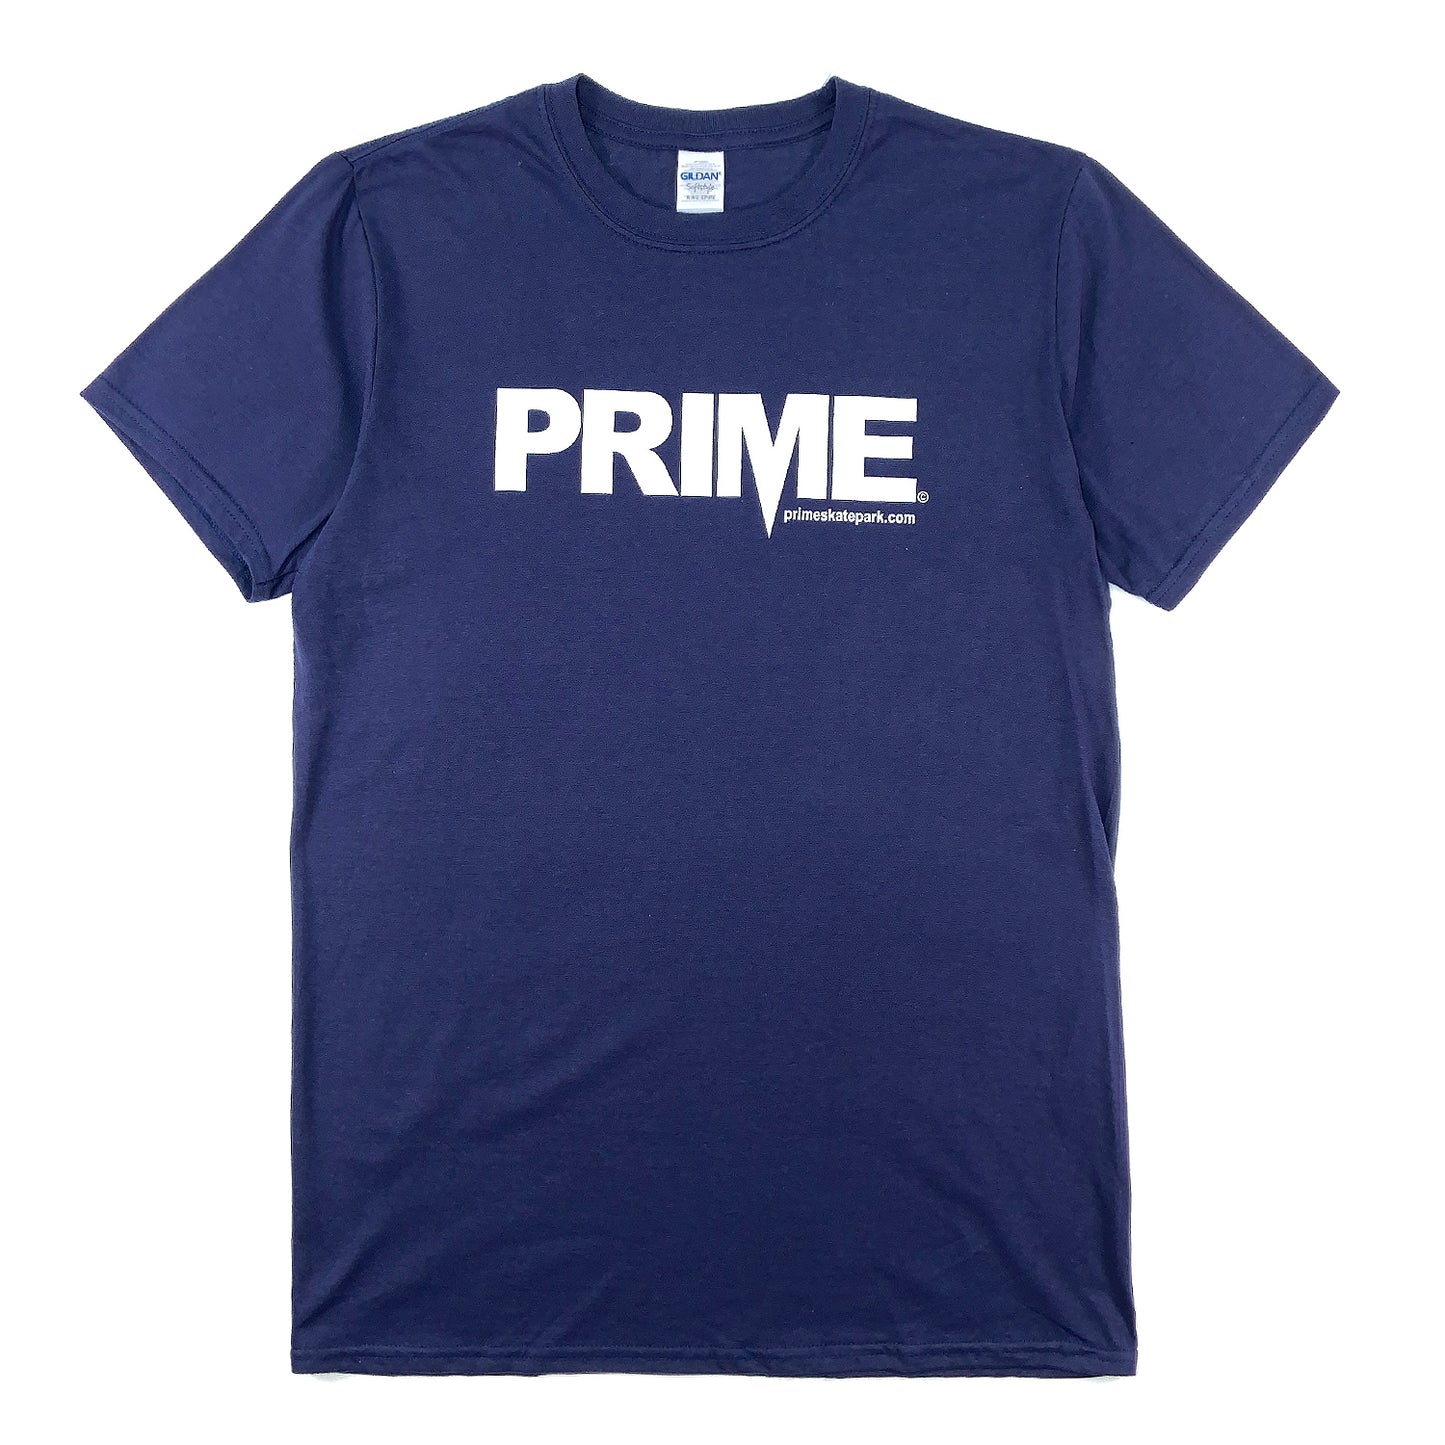 Prime Delux OG Logo T Shirt - Navy / White - Prime Delux Store